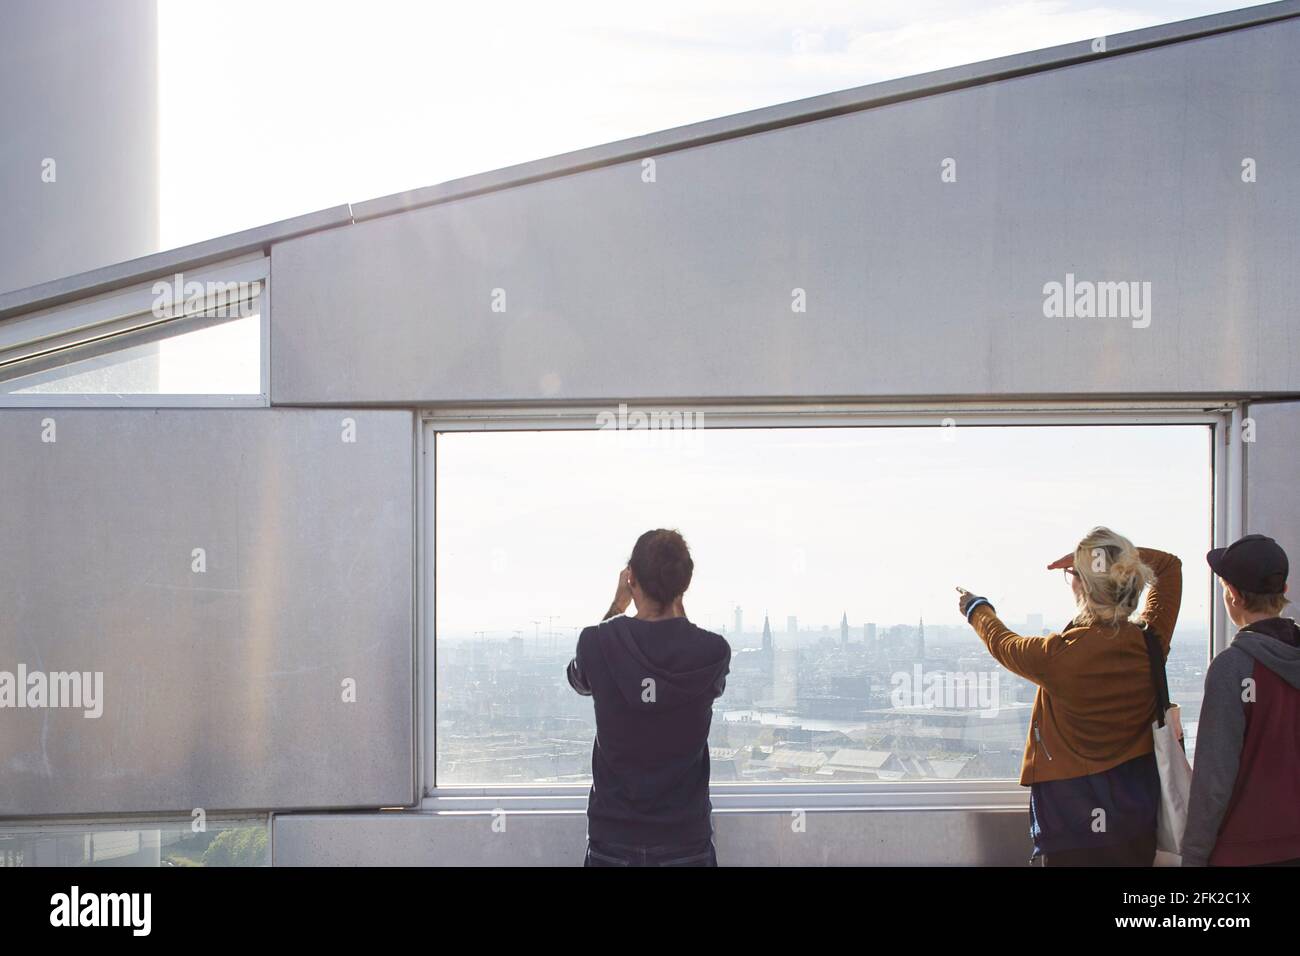 Bildfenster mit Aussicht. Kraftwerk CoppenHill, Kopenhagen, Dänemark. Architekt: BIG Bjarke Ingels Group, 2019. Stockfoto